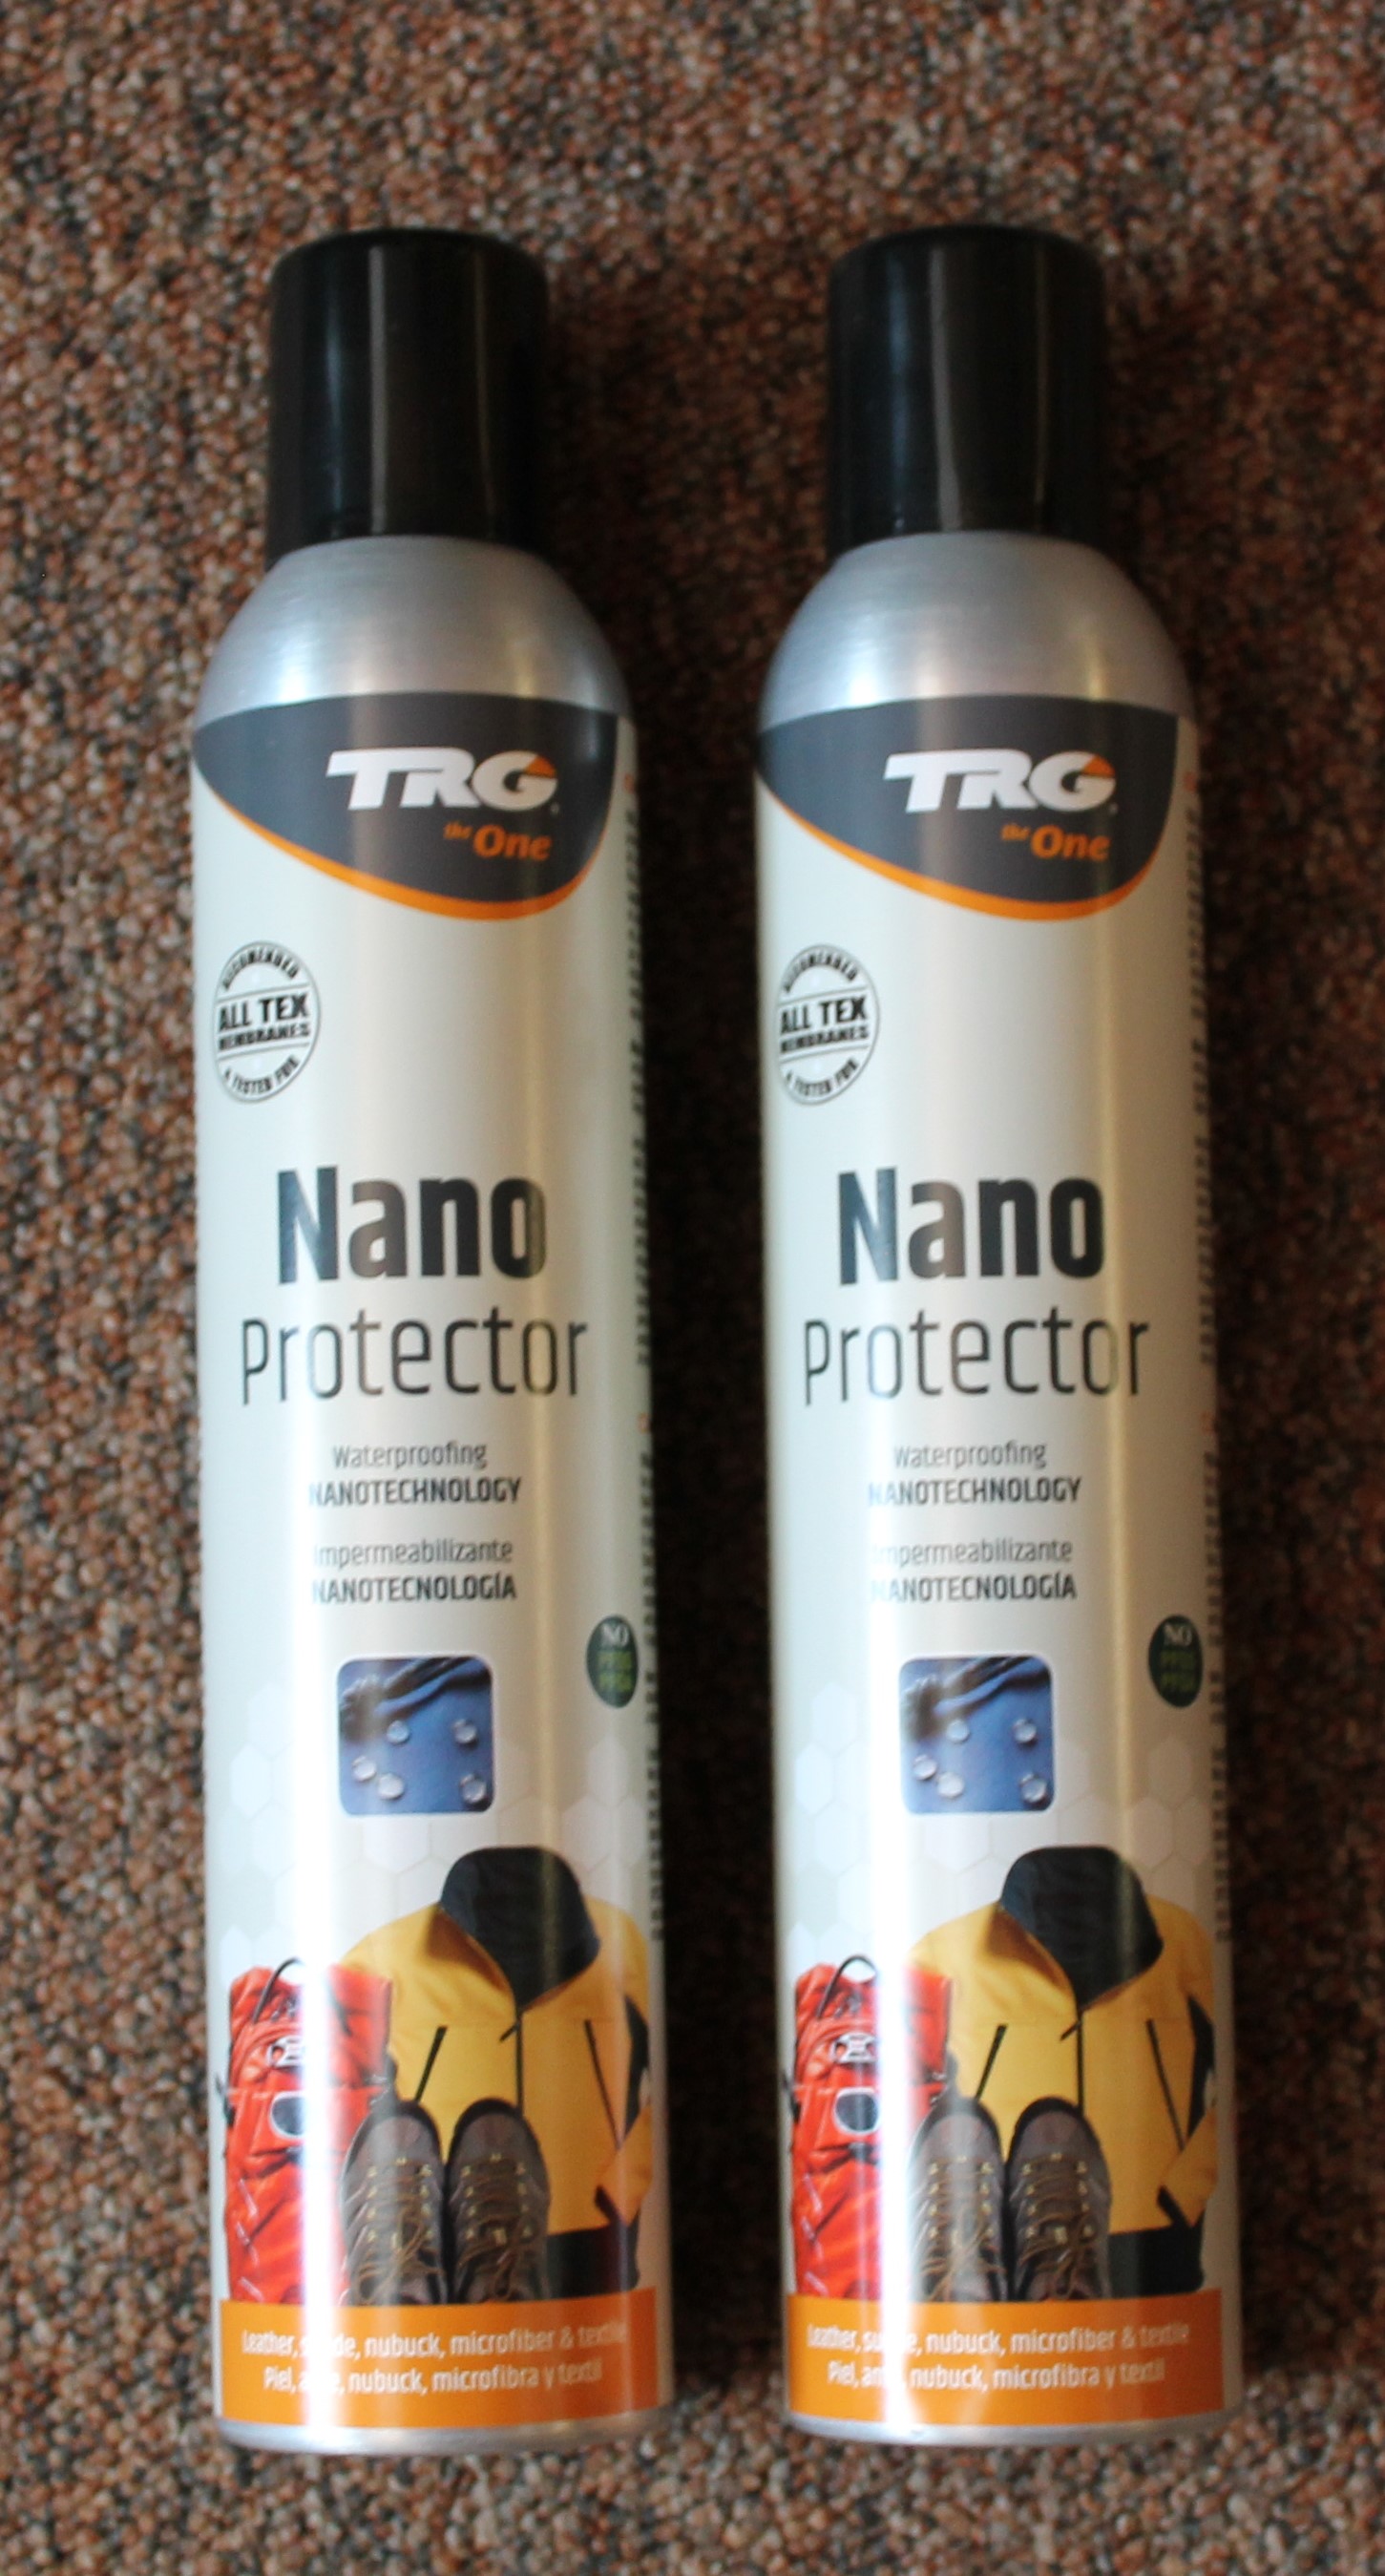 Nano waterprooferJPG